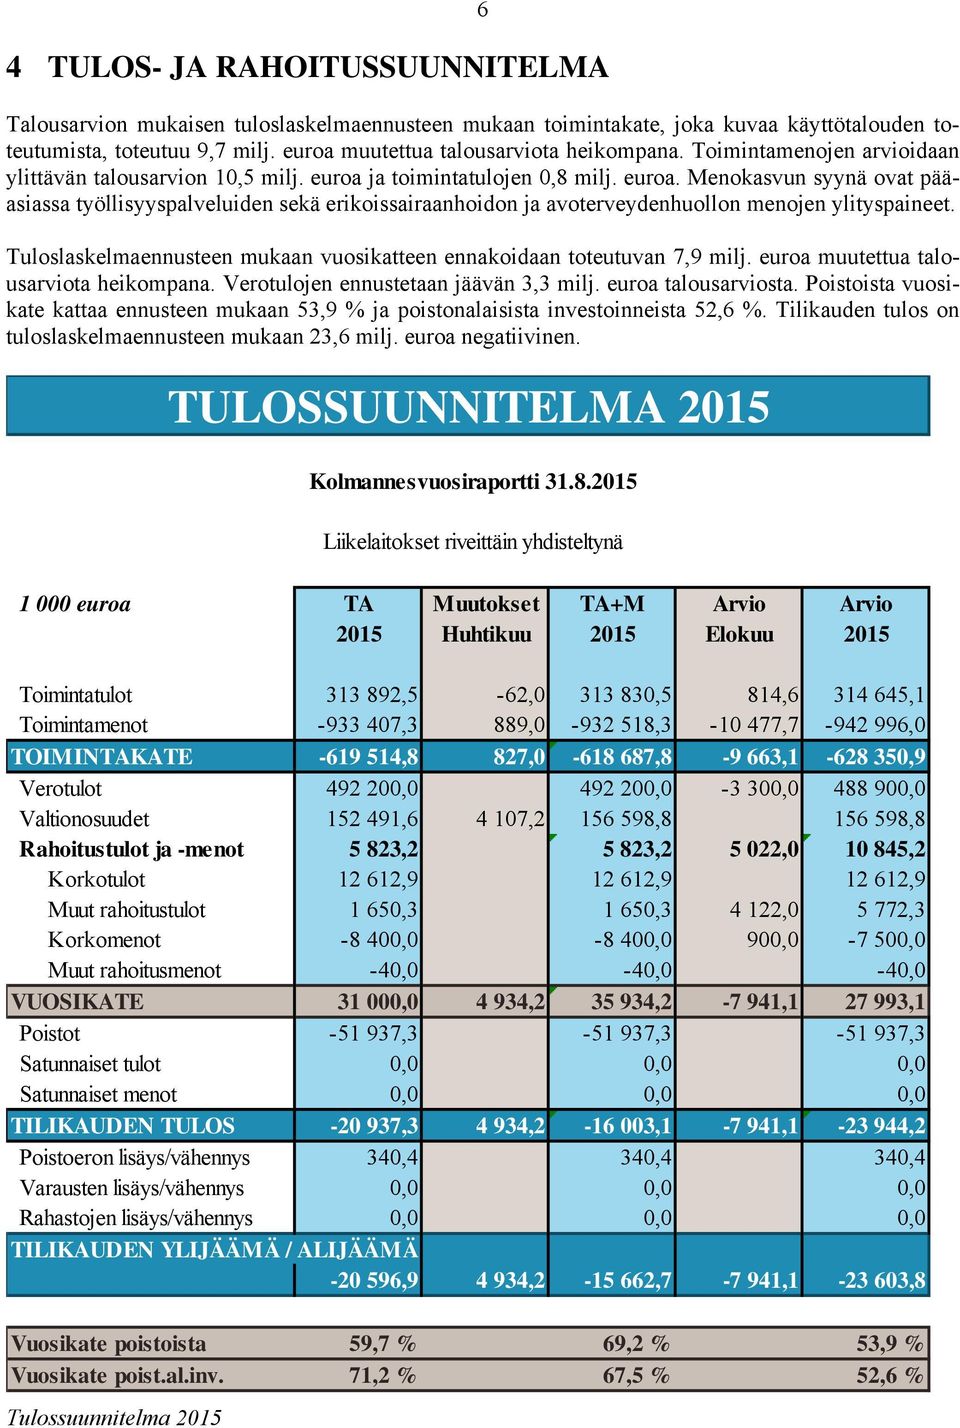 Tuloslaskelmaennusteen mukaan vuosikatteen ennakoidaan toteutuvan 7,9 milj. euroa muutettua talousarviota heikompana. Verotulojen ennustetaan jäävän 3,3 milj. euroa talousarviosta.